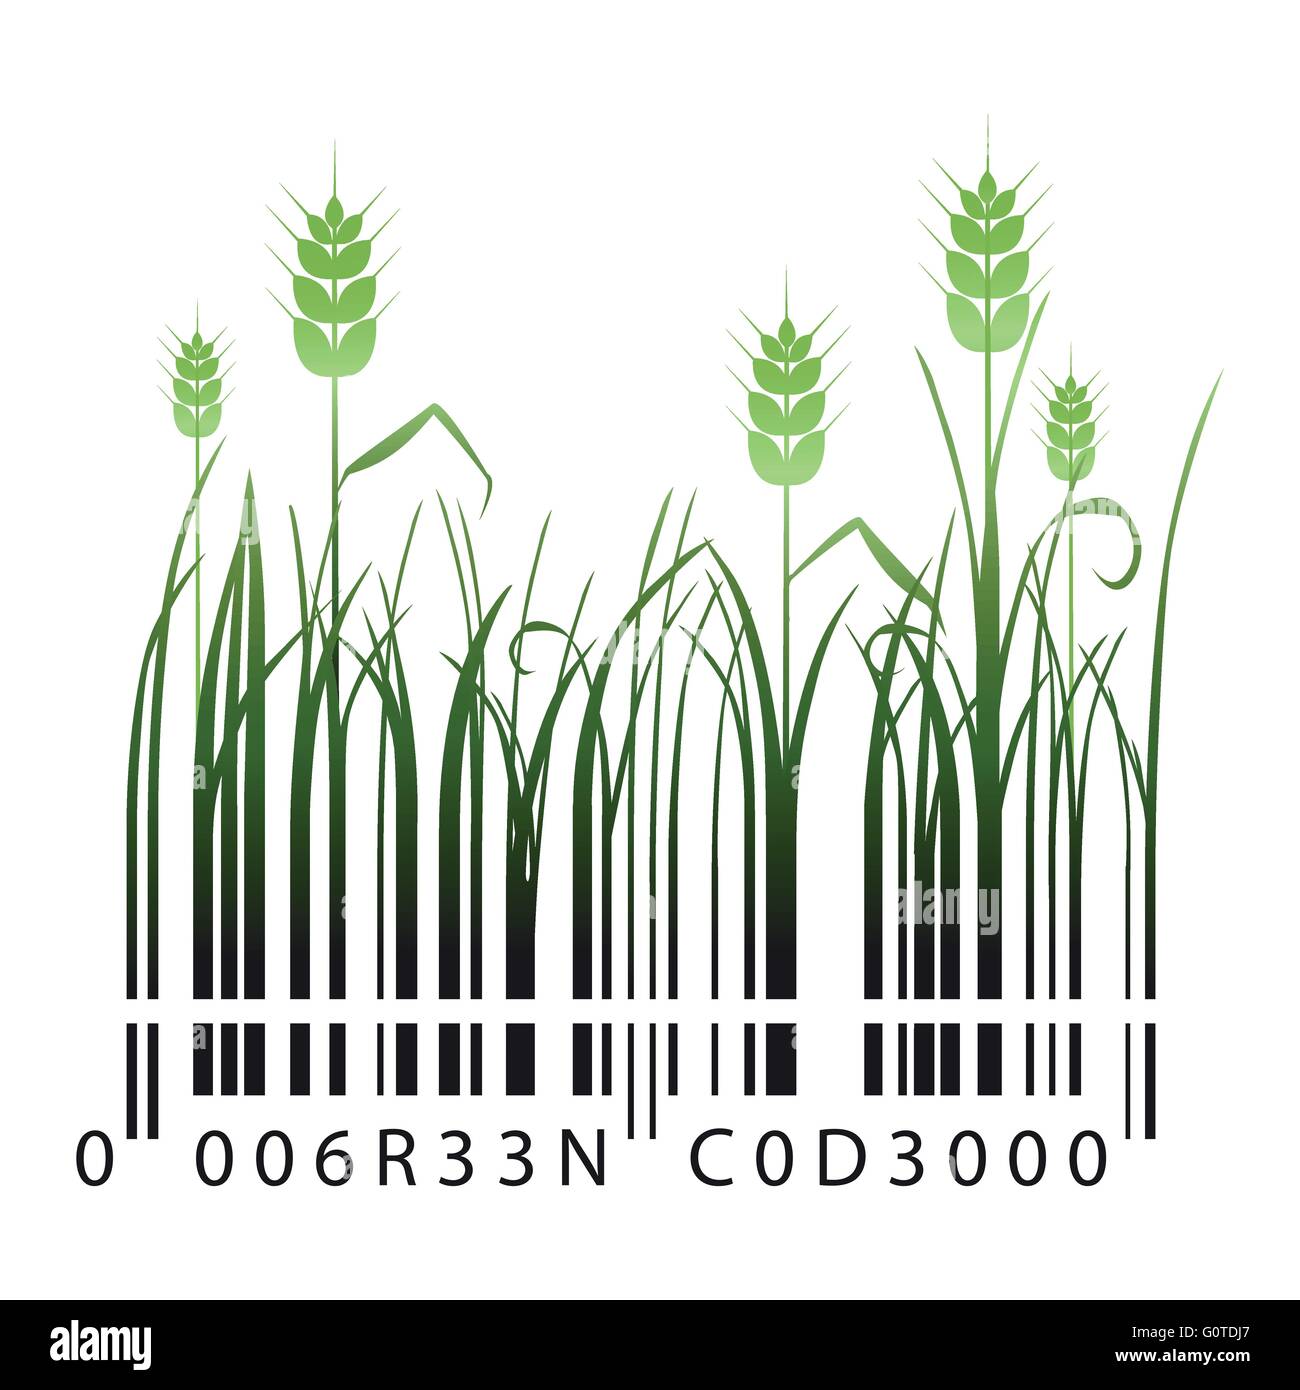 Code barre verte avec des brins d'herbe et les épis de blé Illustration de Vecteur